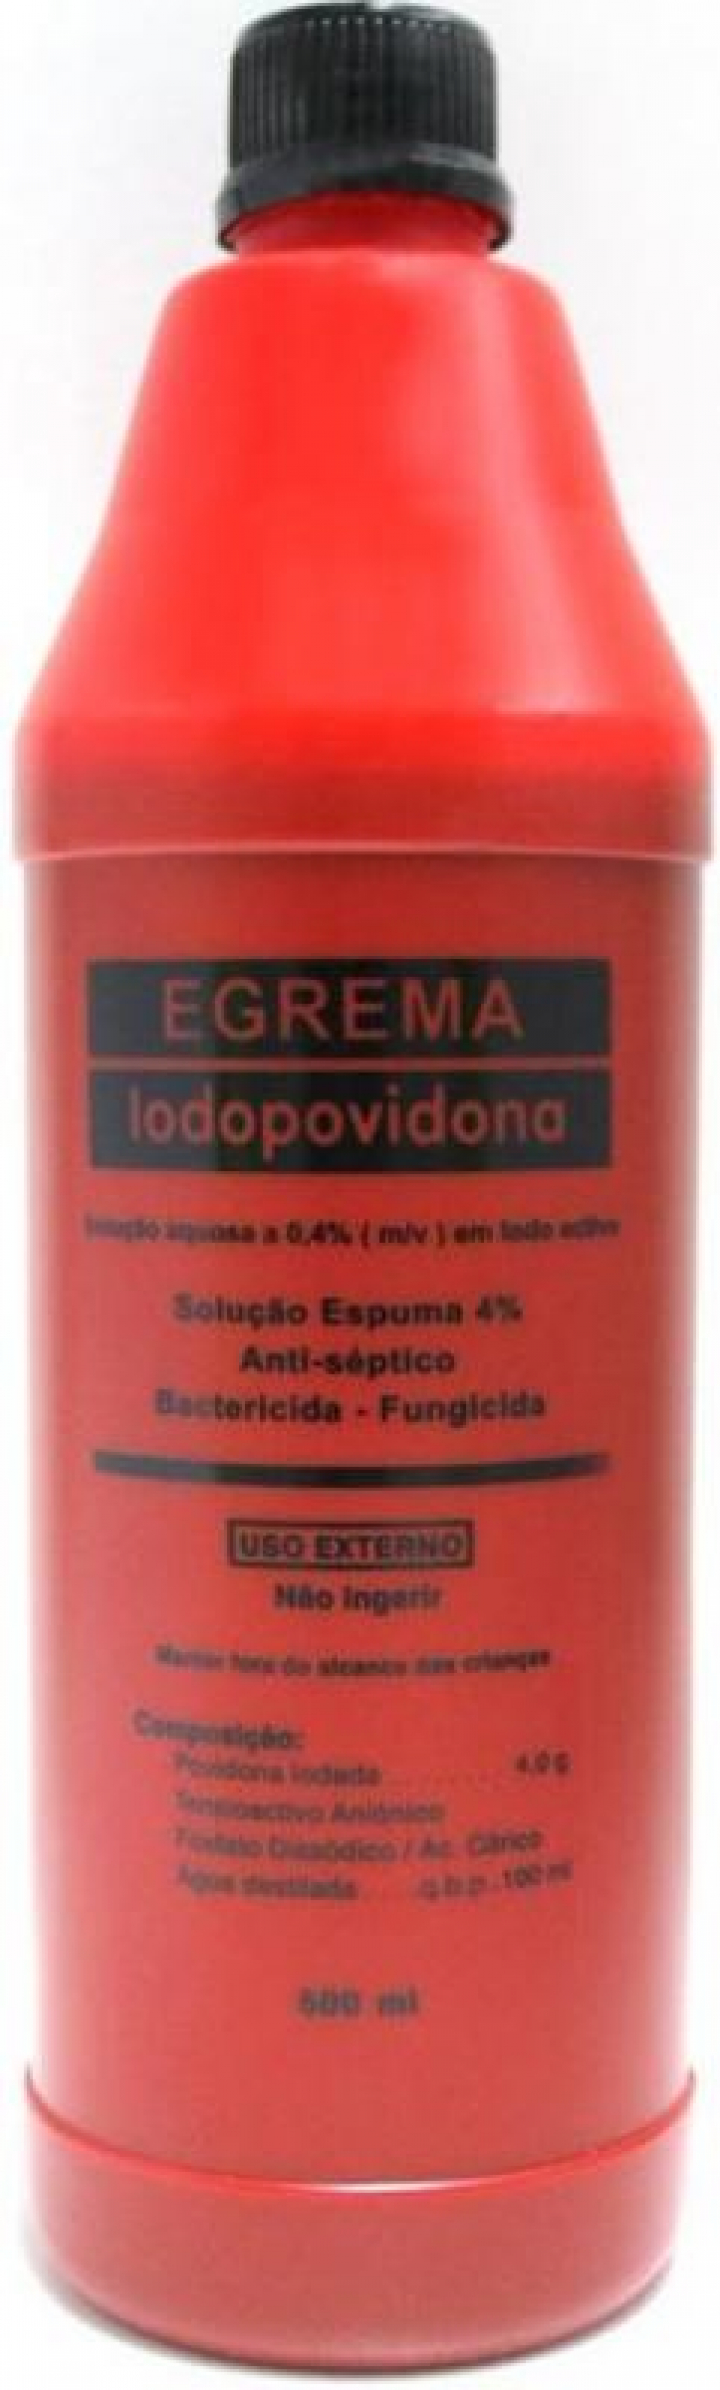 Iodopovidona espuma - solução anti-séptica e bactericida 4% 500ml